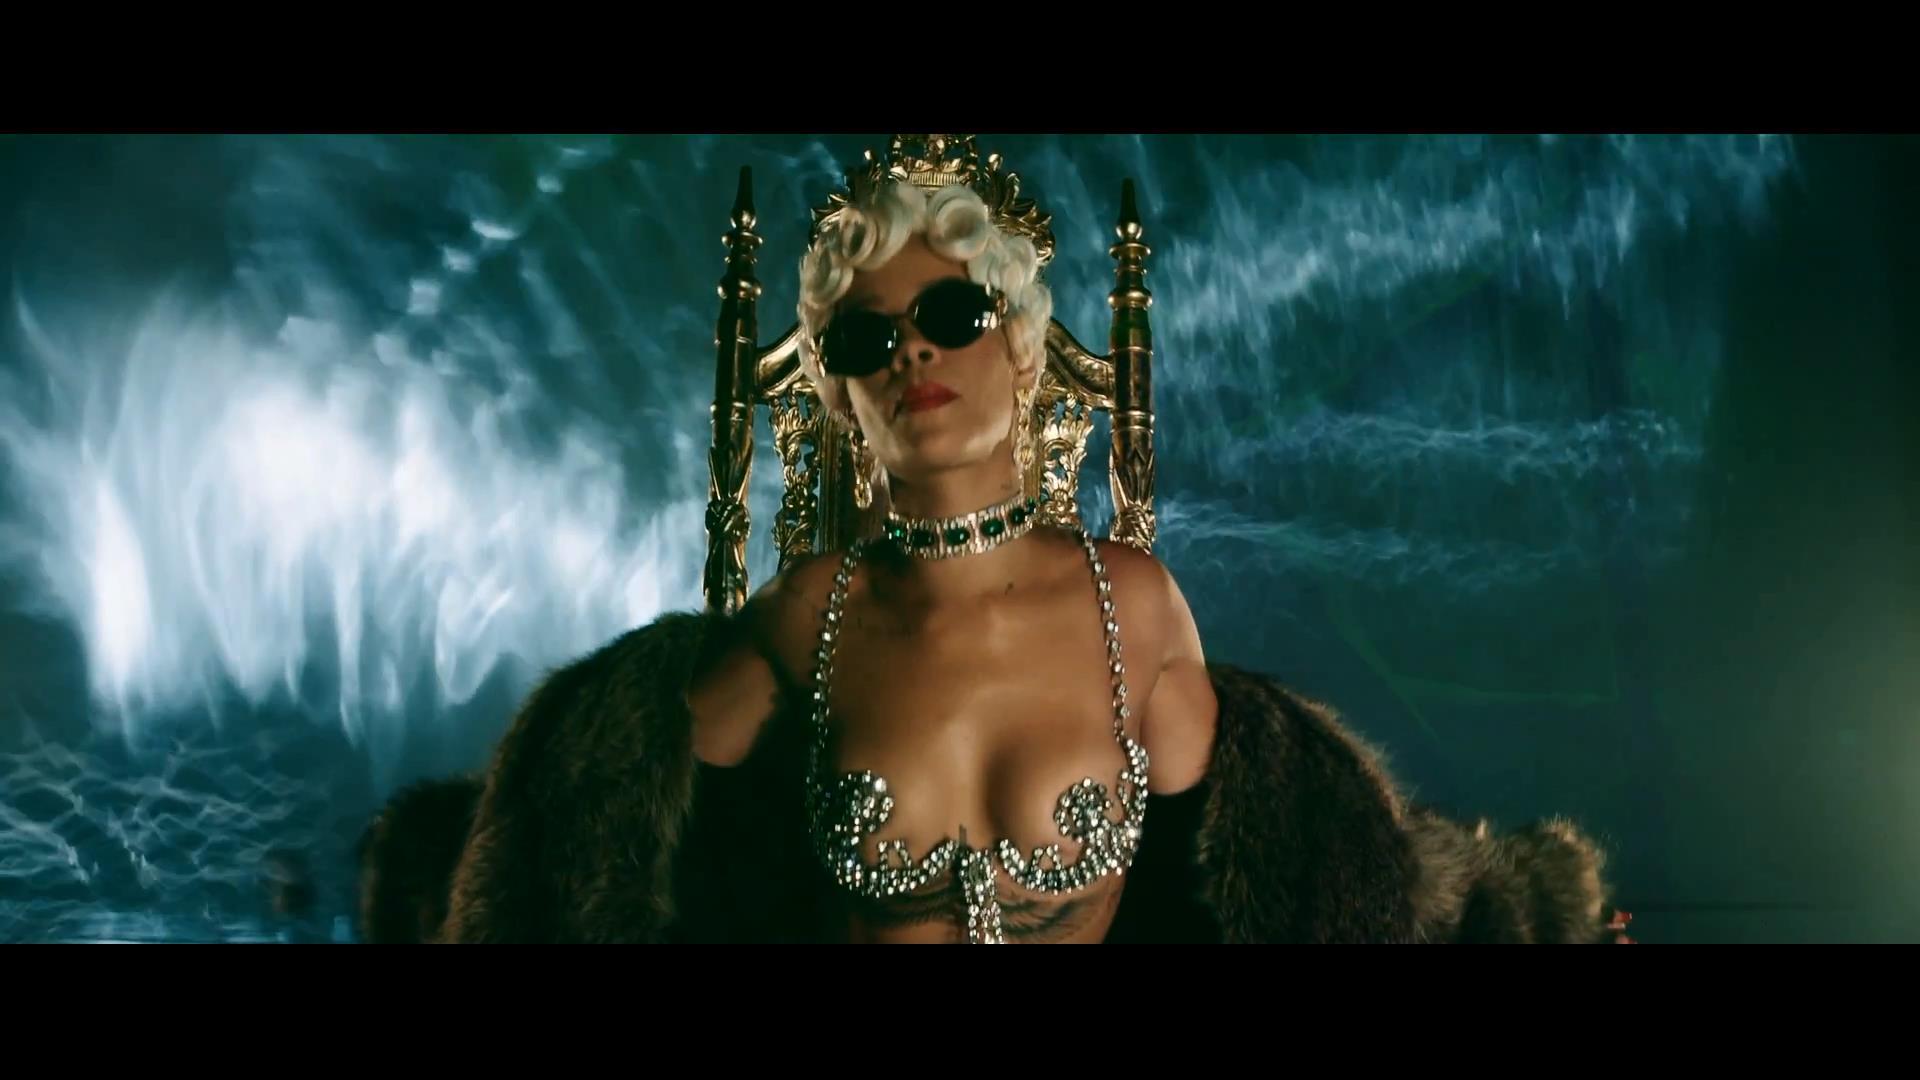 Rihanna pour it up скачать бесплатно mp3